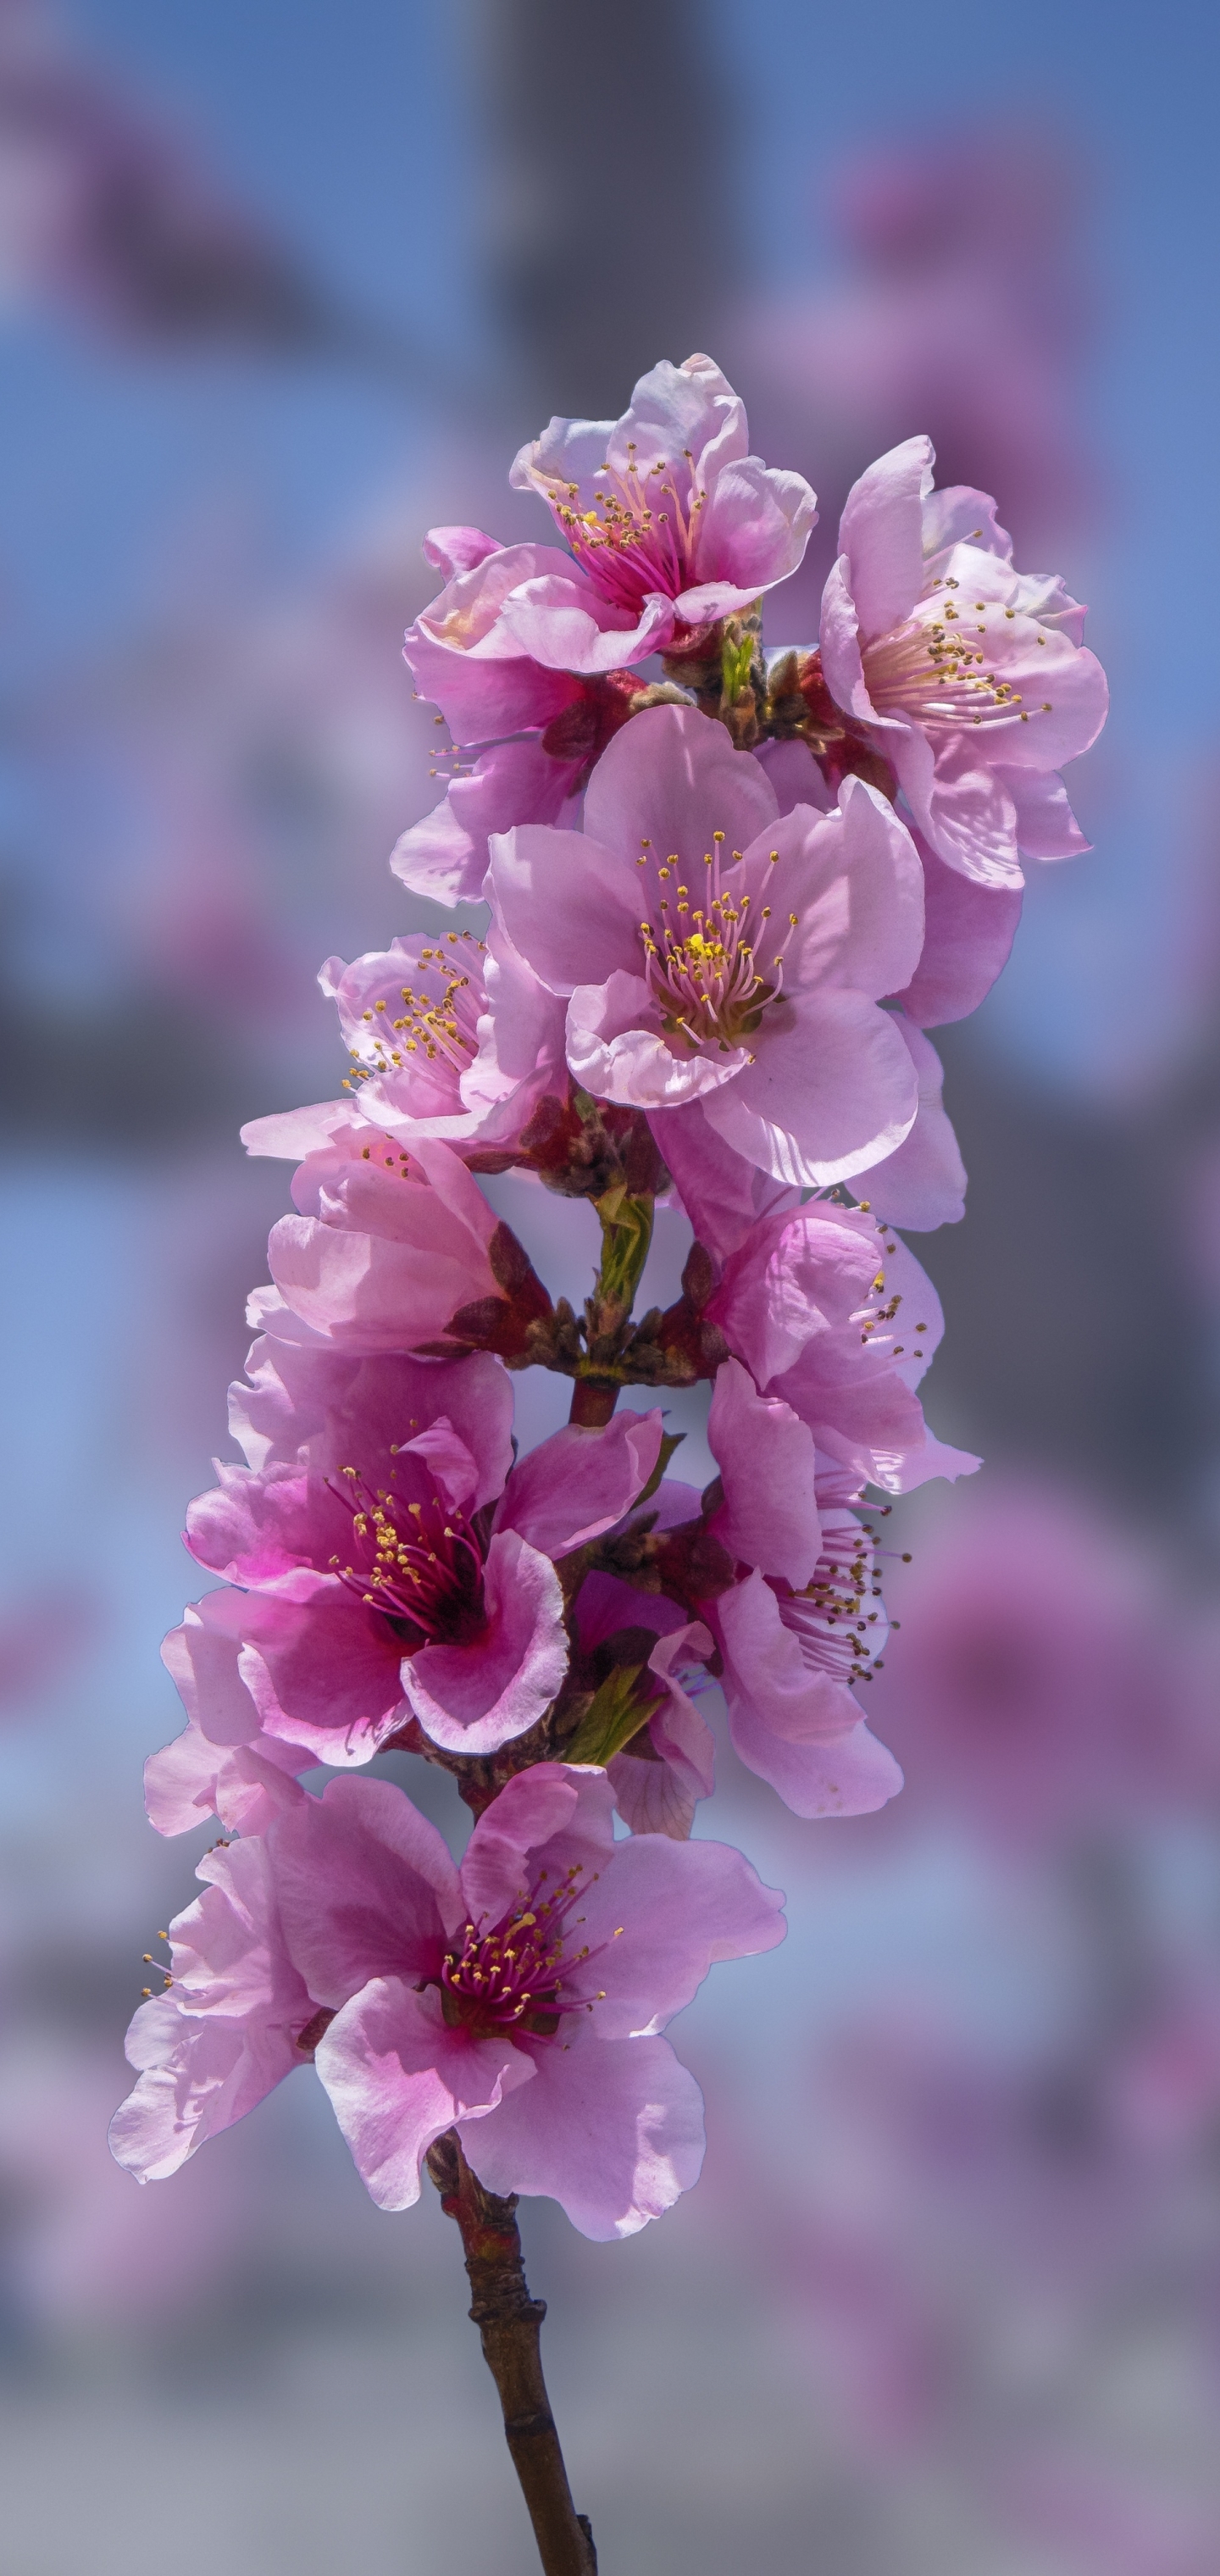 Pink Peach Blossoms by enrique lopez